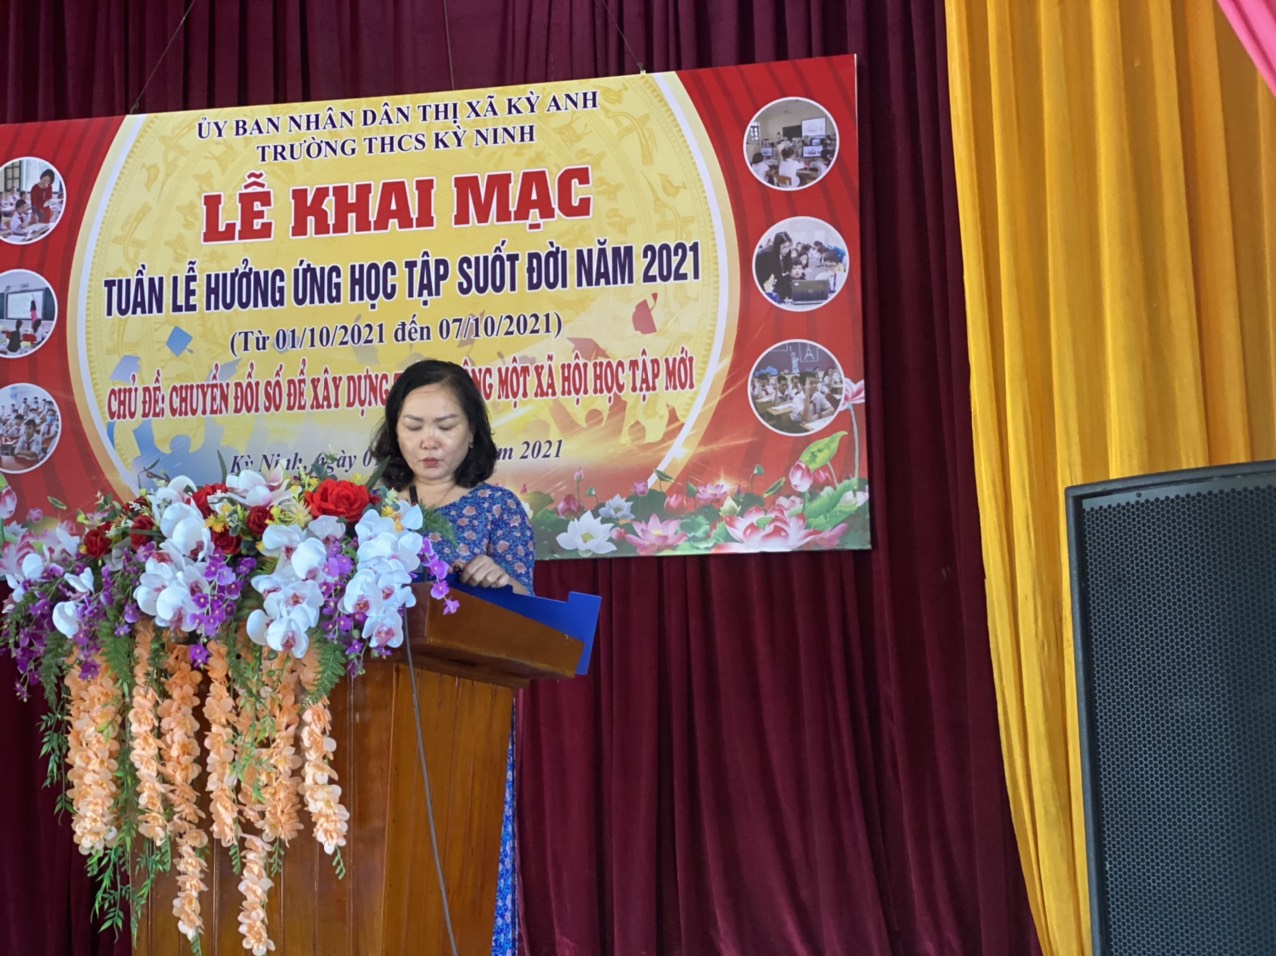 Cô giáo Trần Thị Mai Hương - Phó Hiệu trưởng Trường THCS Kỳ Ninh phát biểu khai mạc buổi lễ.